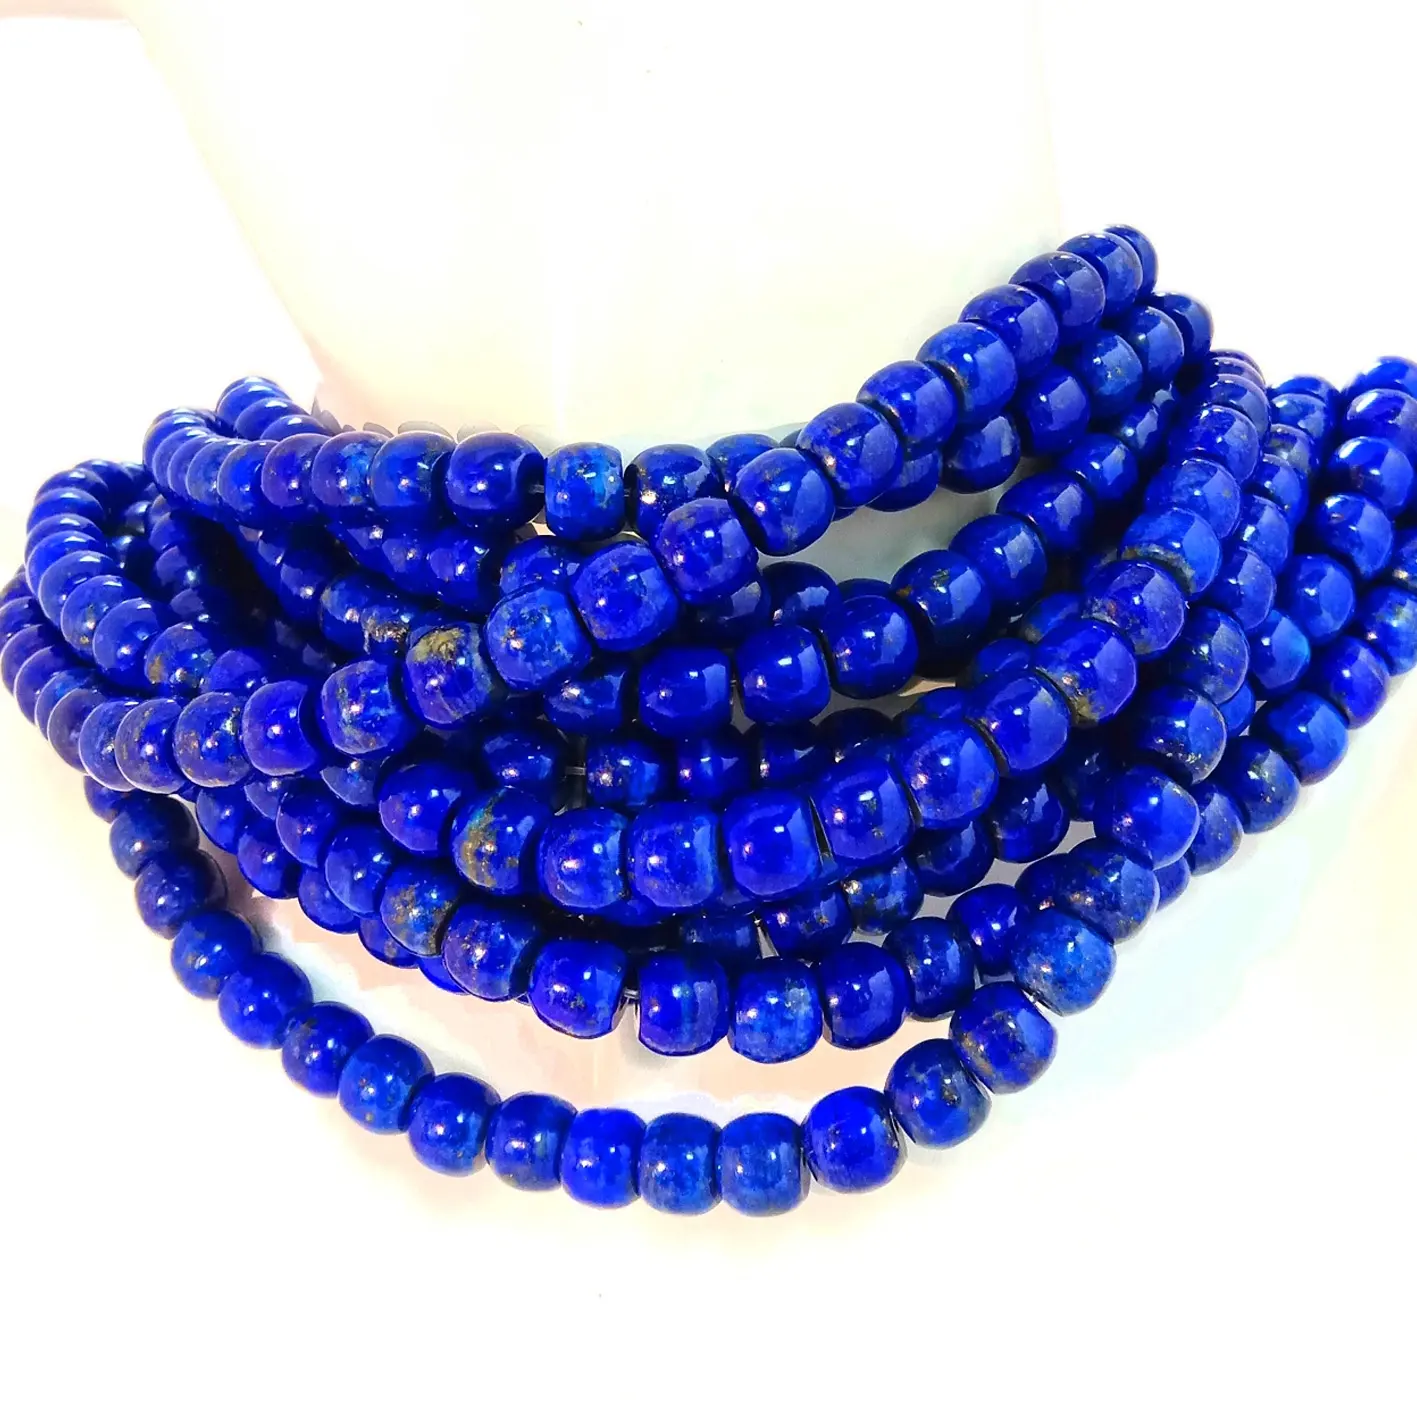 Lapis lazuli naturel lisse perles rondes cylindre bleu profond perles de pierres précieuses perles en gros en vrac